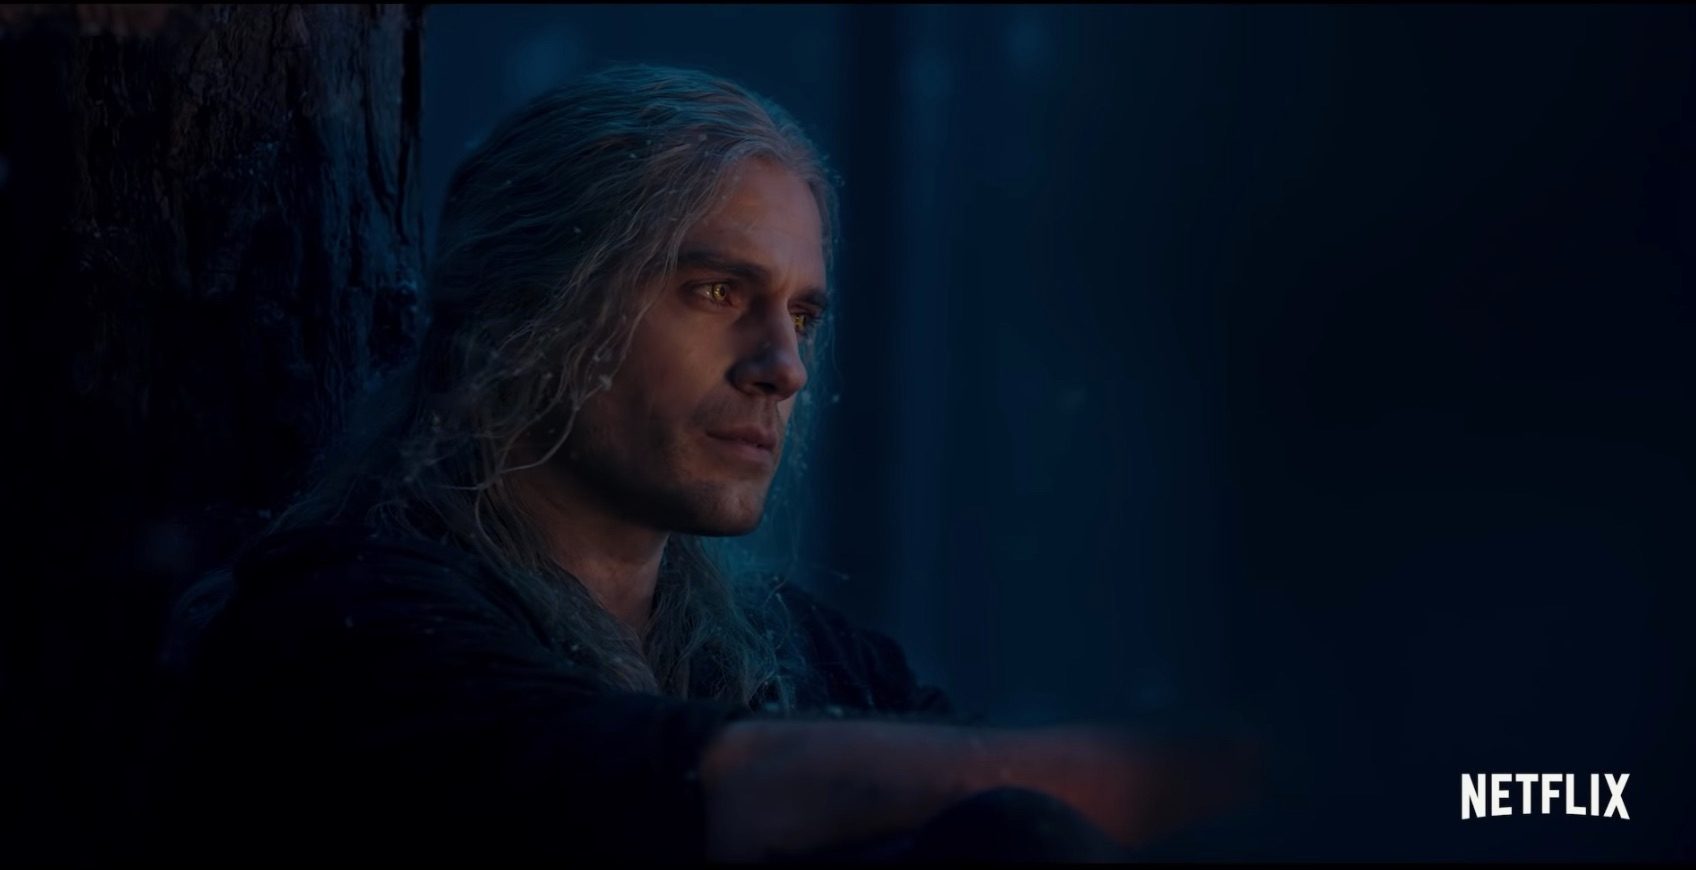 WATCH: ‘The Witcher’ season 2 teaser trailer follows Geralt and Ciri’s journey